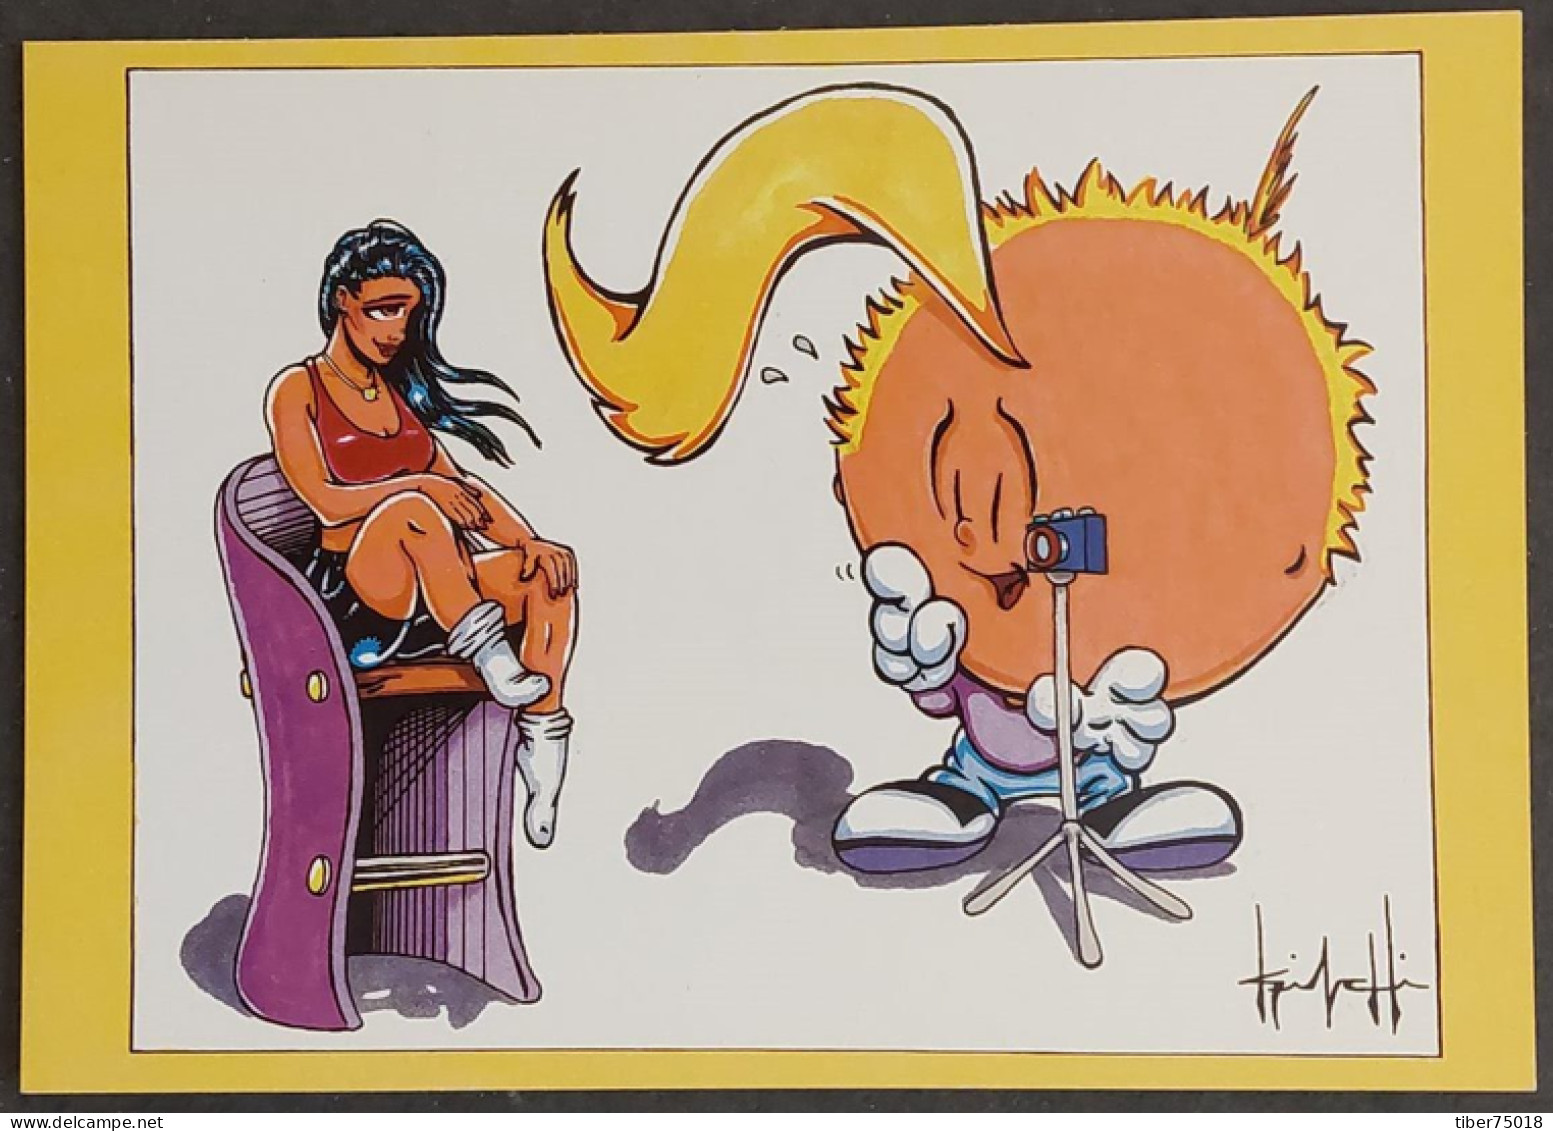 Carte Postale - Marc D. Latrique "Kinchi" - Comic Art, Cartoons & Commercial Graphics (Pin-up - Appareil Photo) - Publicité